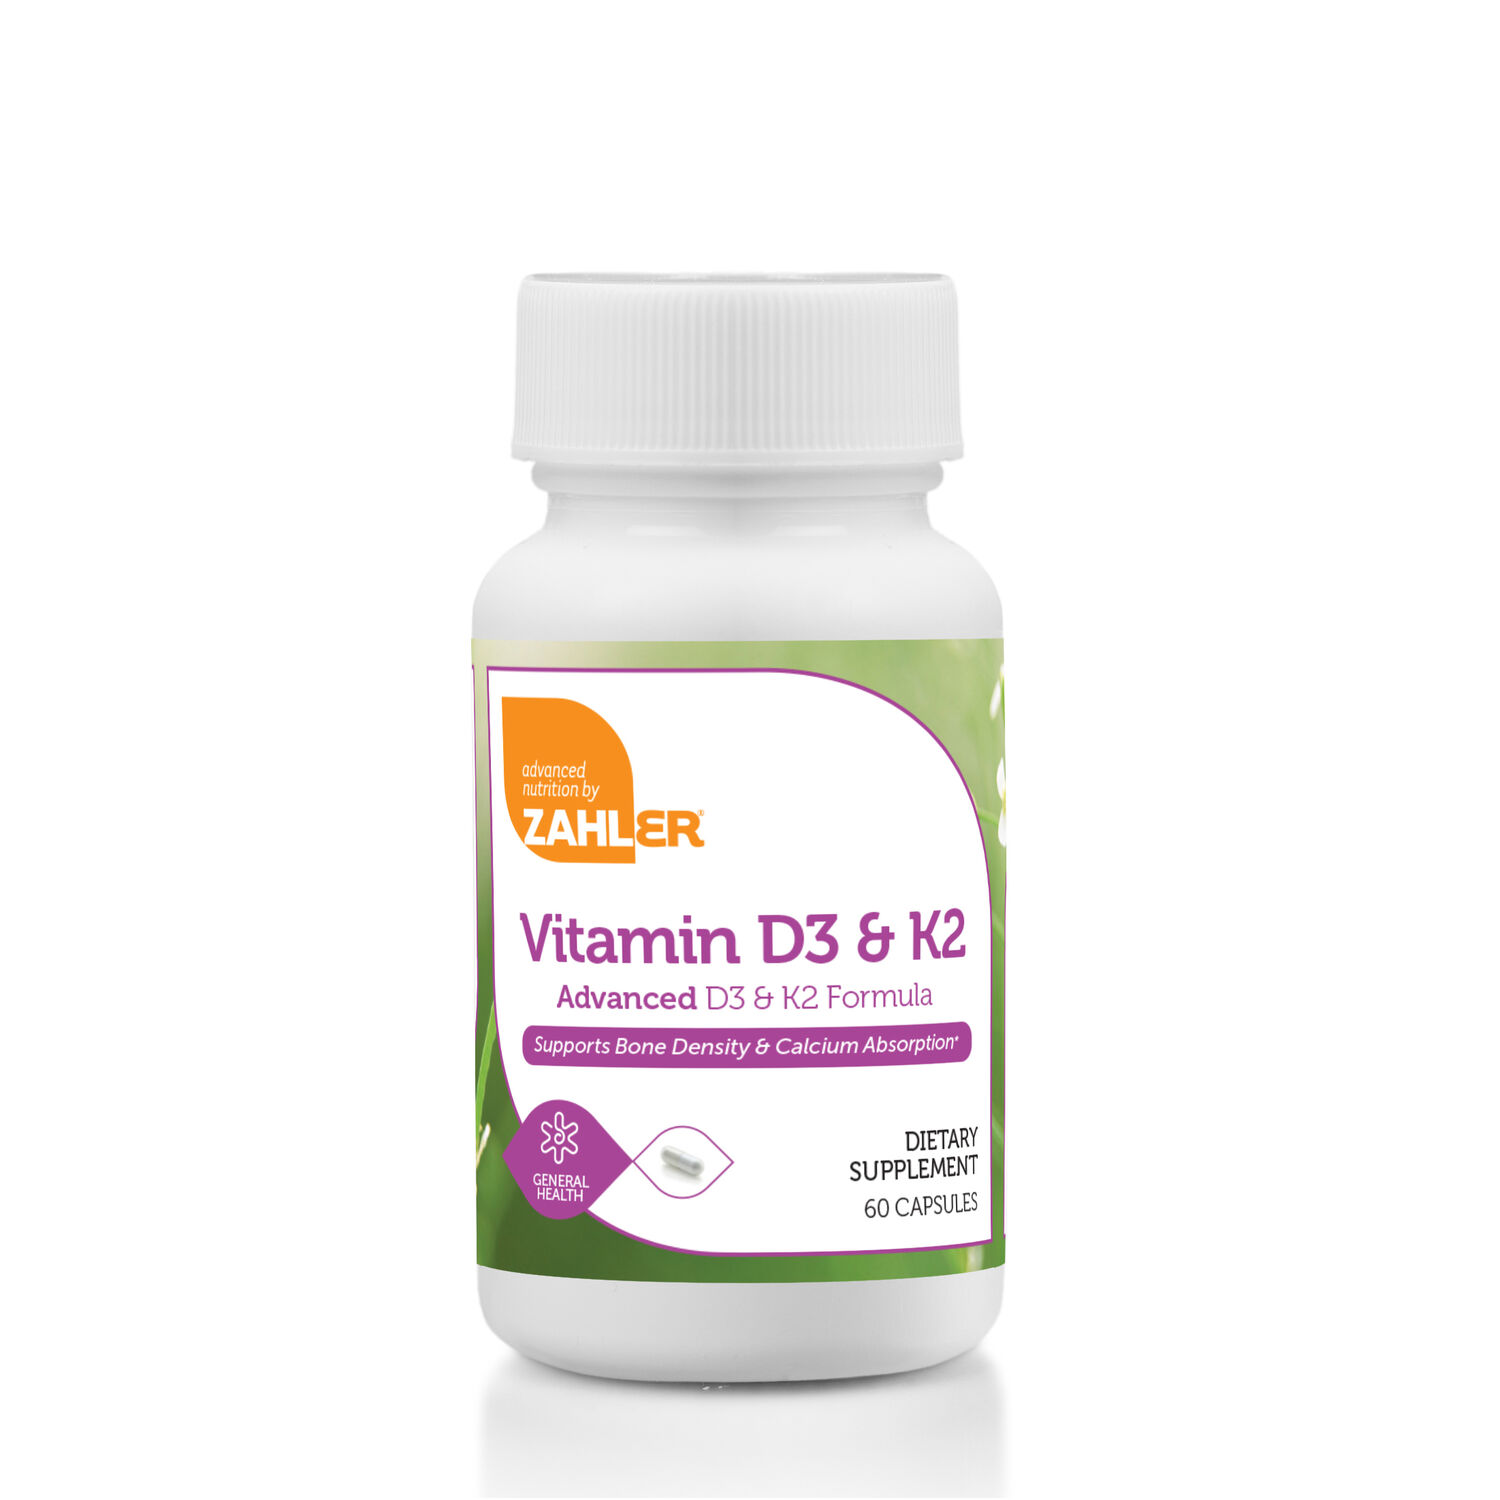 ZAHLER Vitamin D3 & K2 - 60 Capsules (60 Servings)